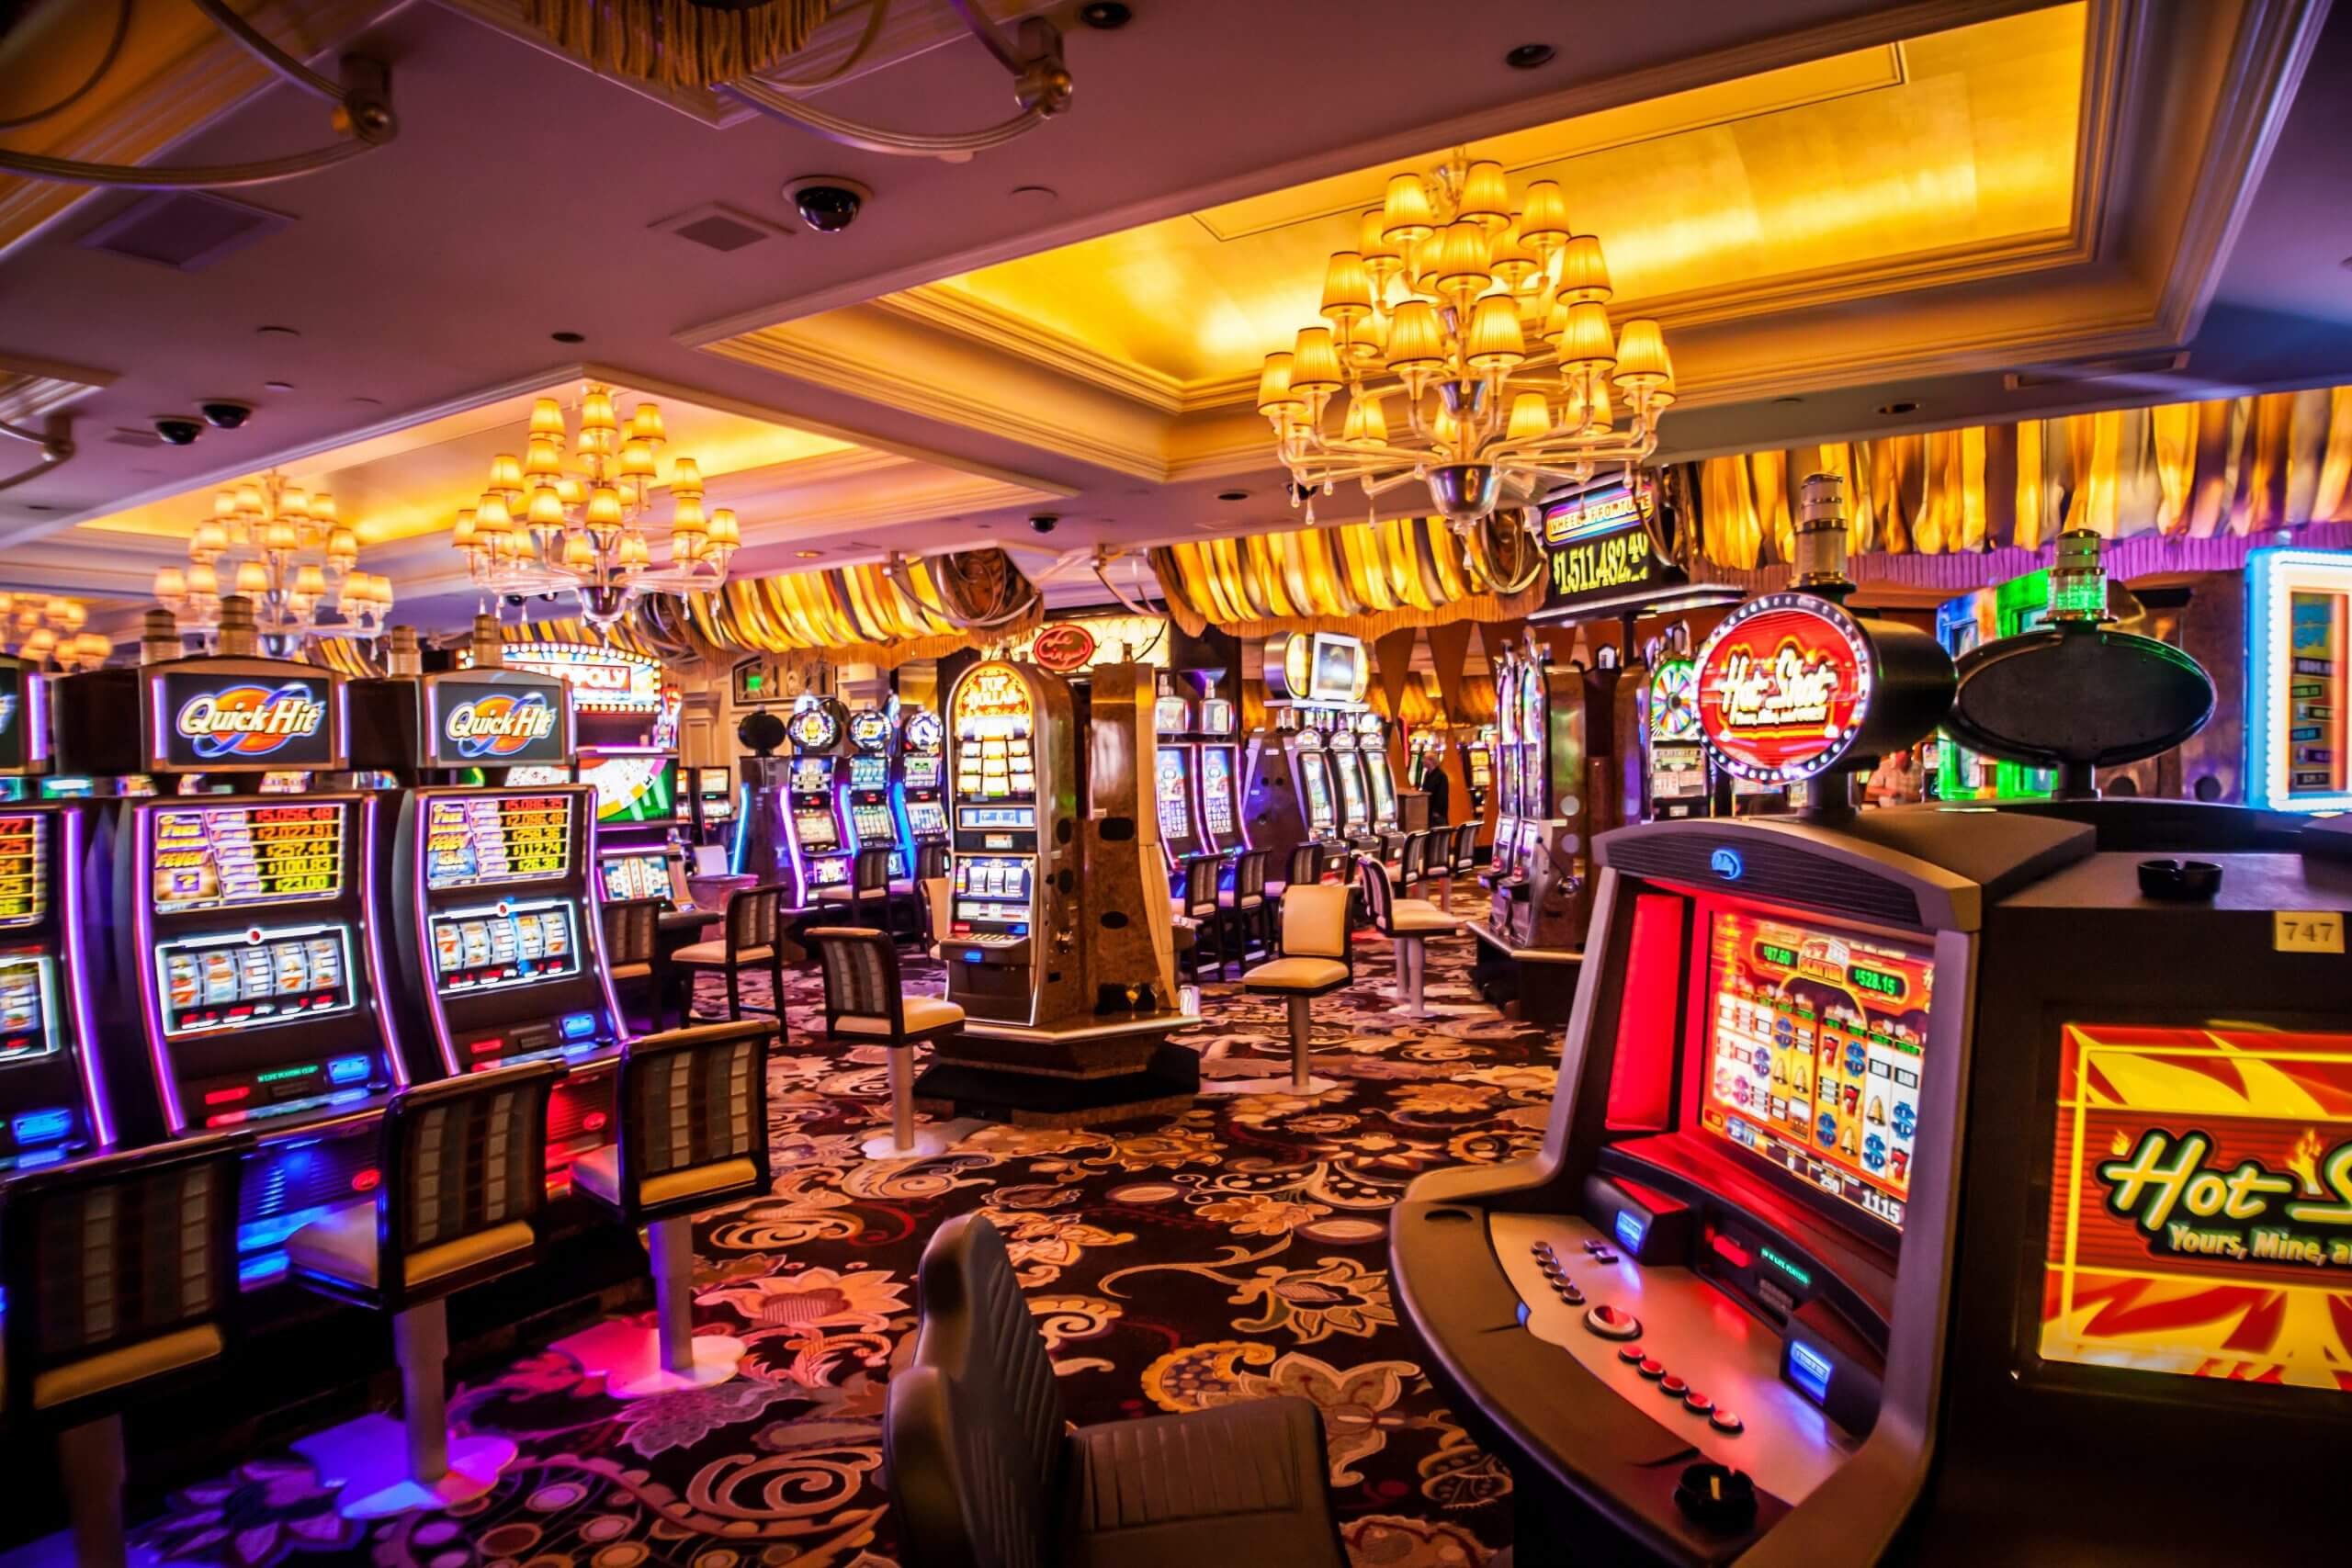 オンラインカジノでパチンコを楽し - Playing Pachinko at Online Casinos